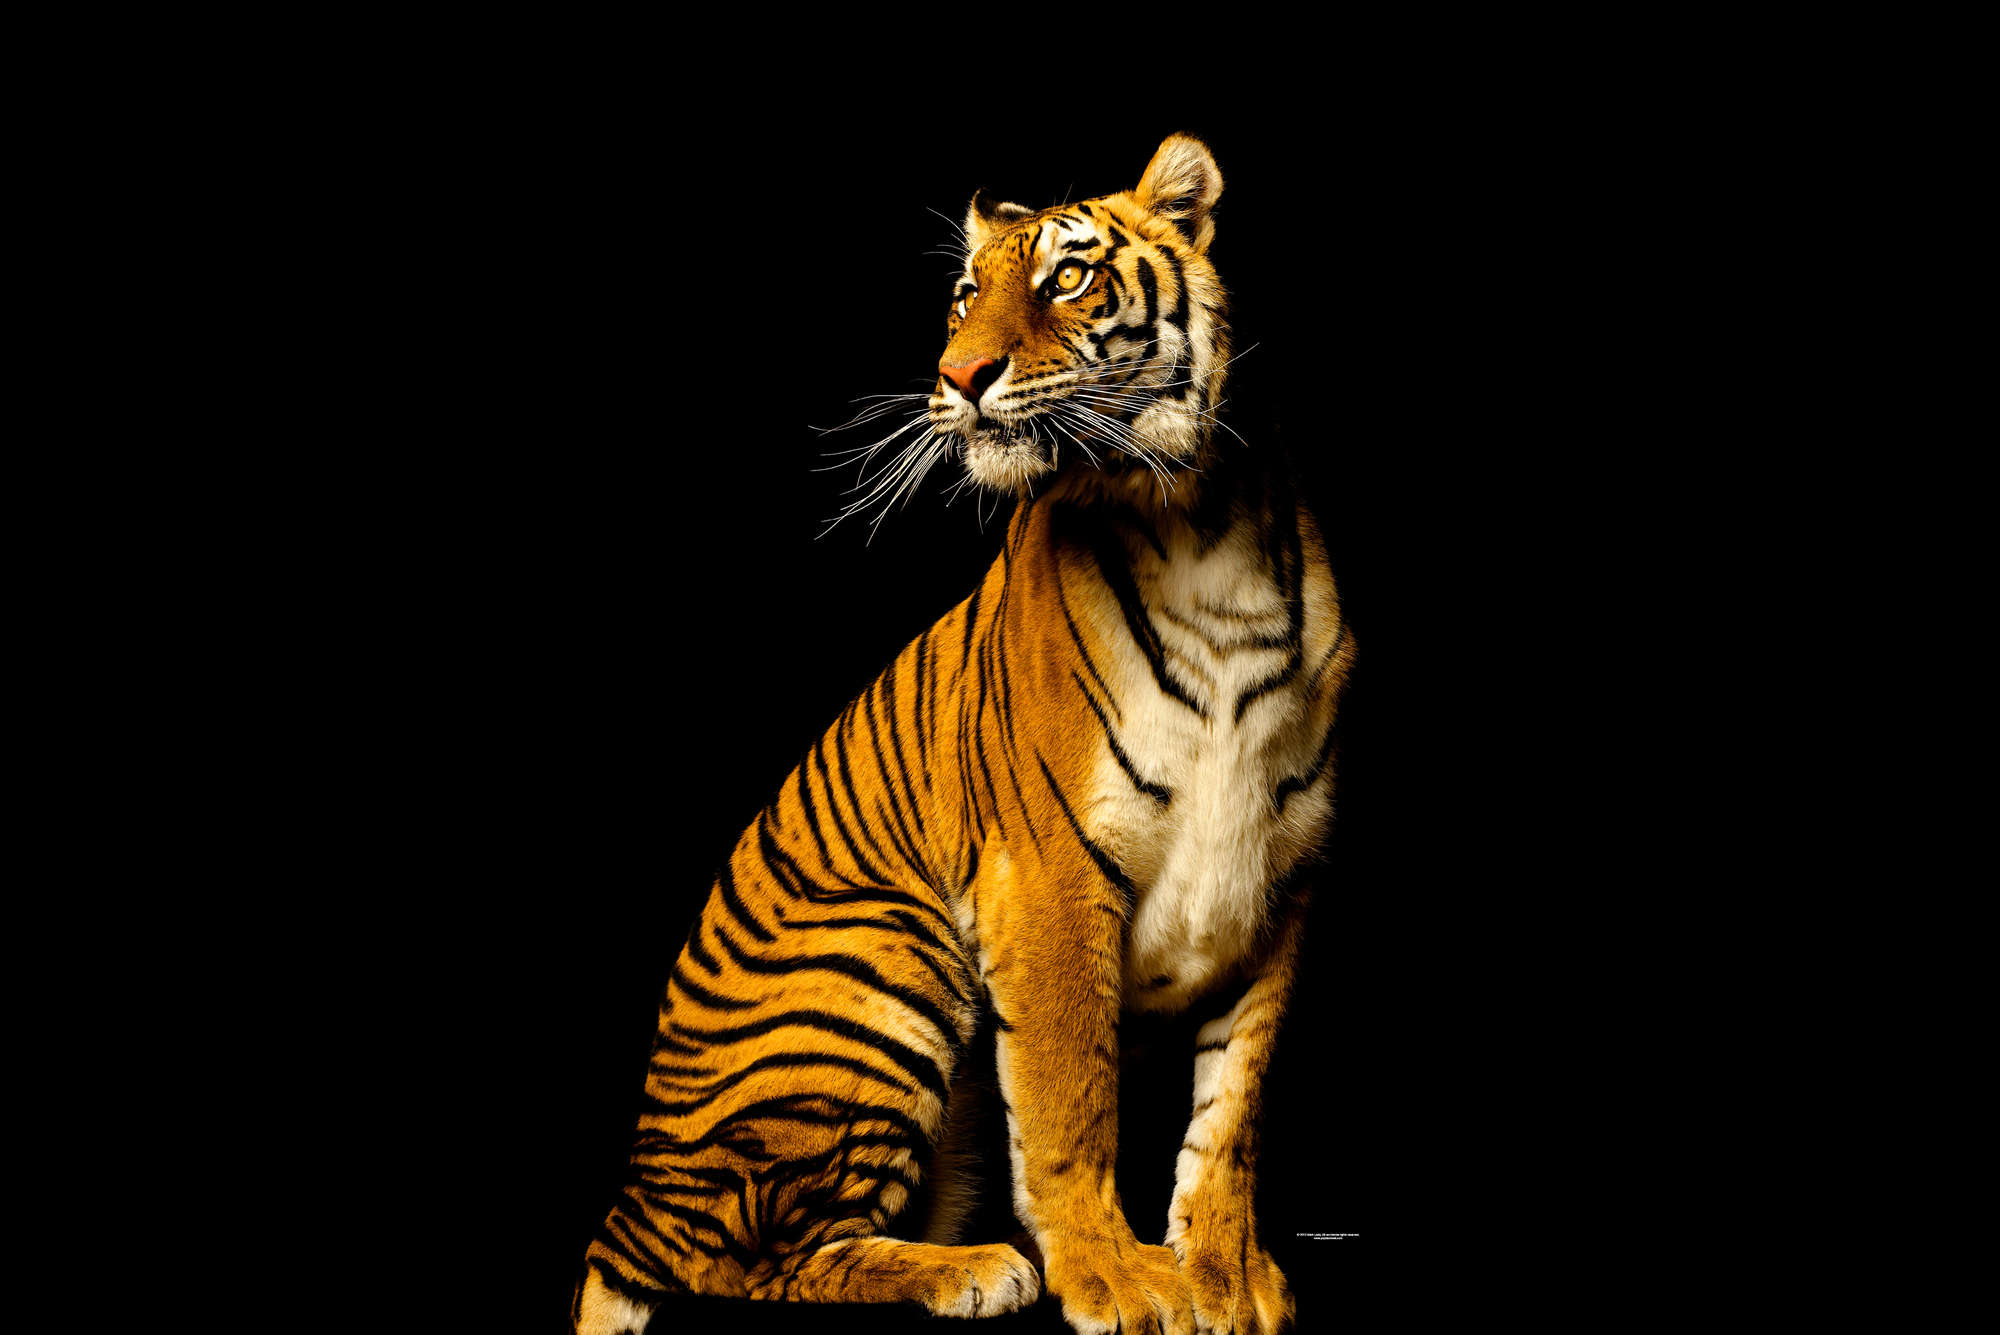             Assis sur un tigre - papier peint avec portrait d'animal
        